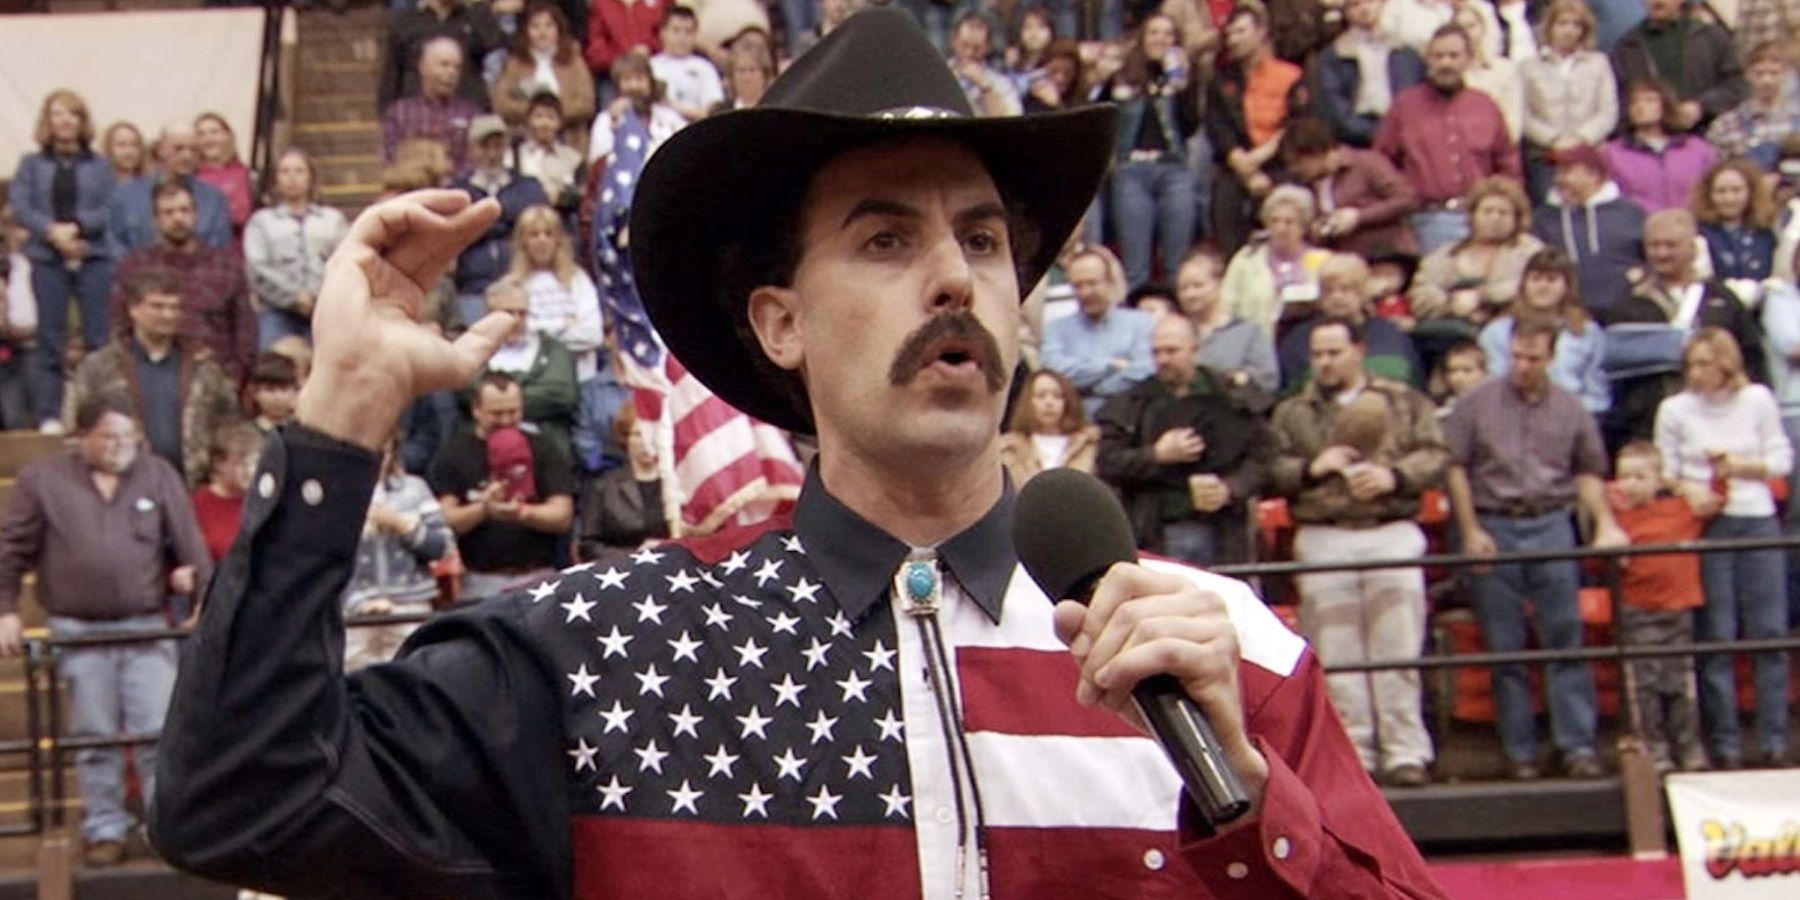 Borat at a rodeo